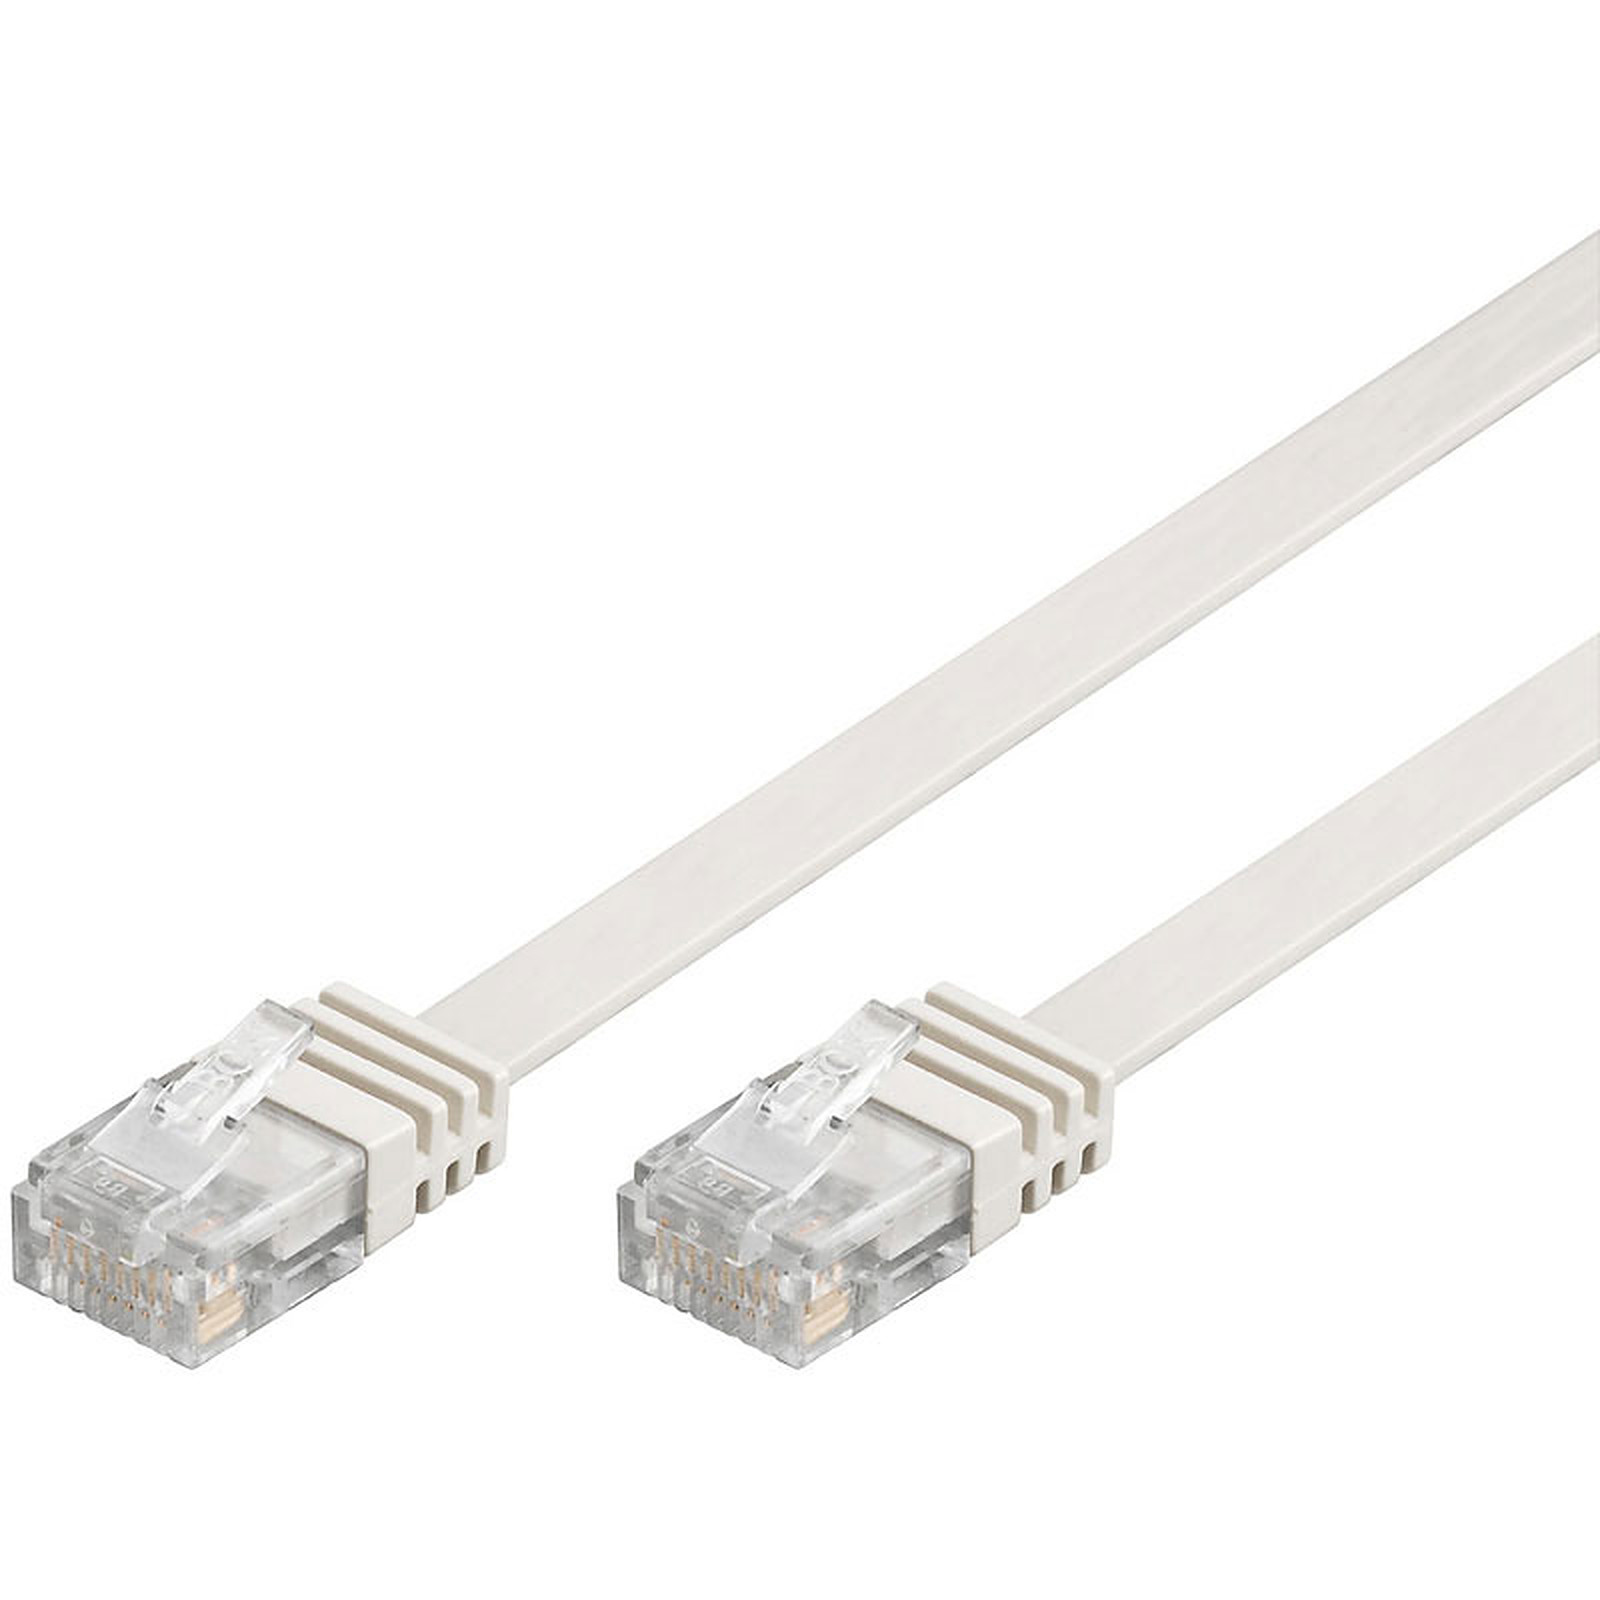 Cable RJ45 plat categorie 6 U/UTP 20 m (Blanc) - Cable RJ45 Generique